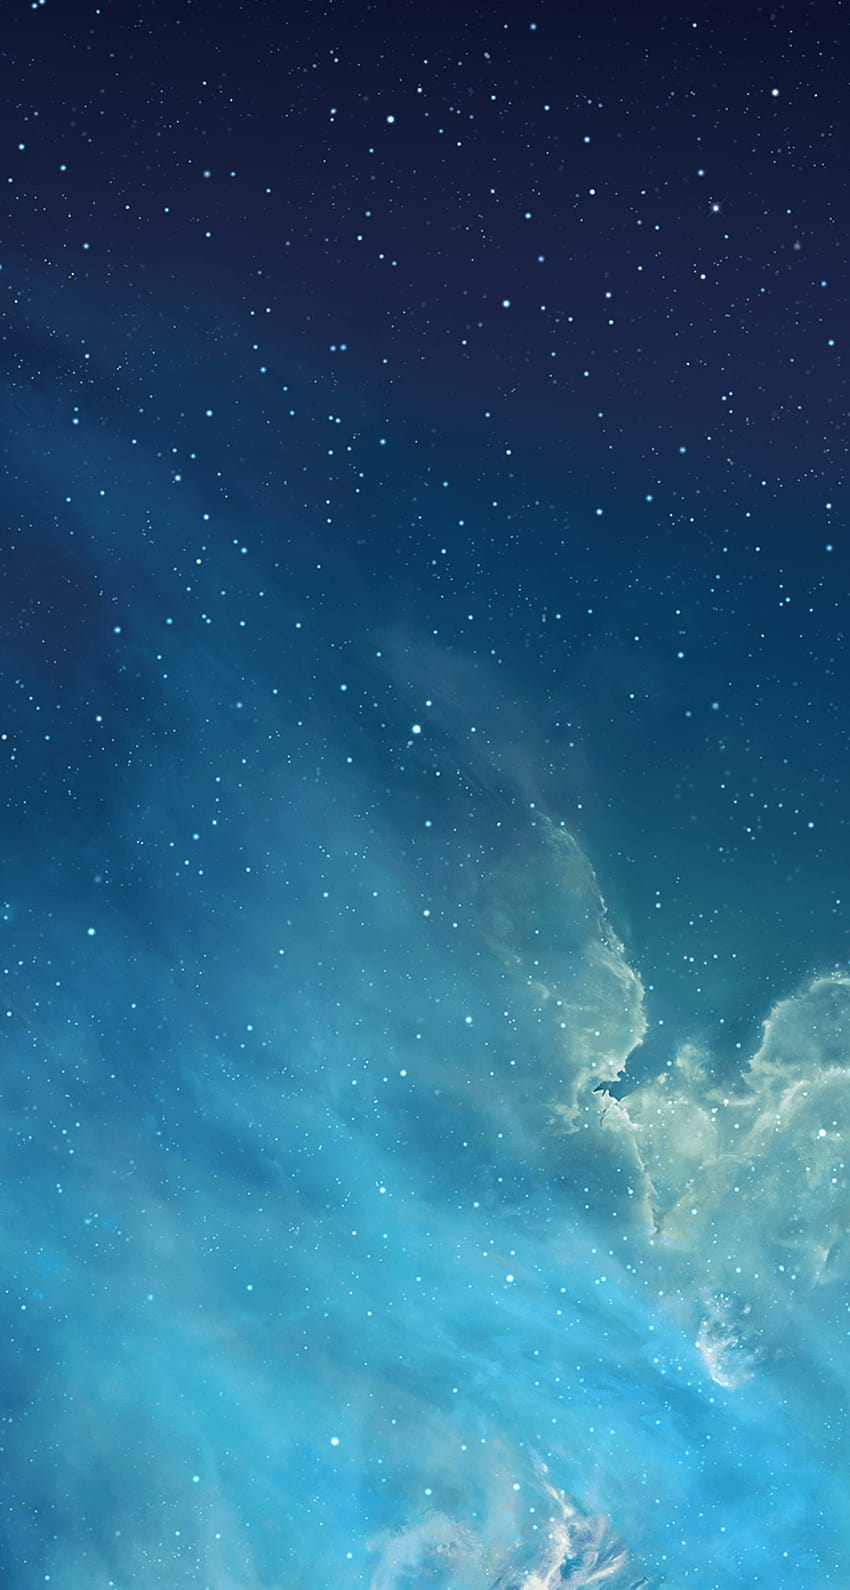 Teléfono de cielo azul en perro, cielo despejado de noche fondo de pantalla del teléfono